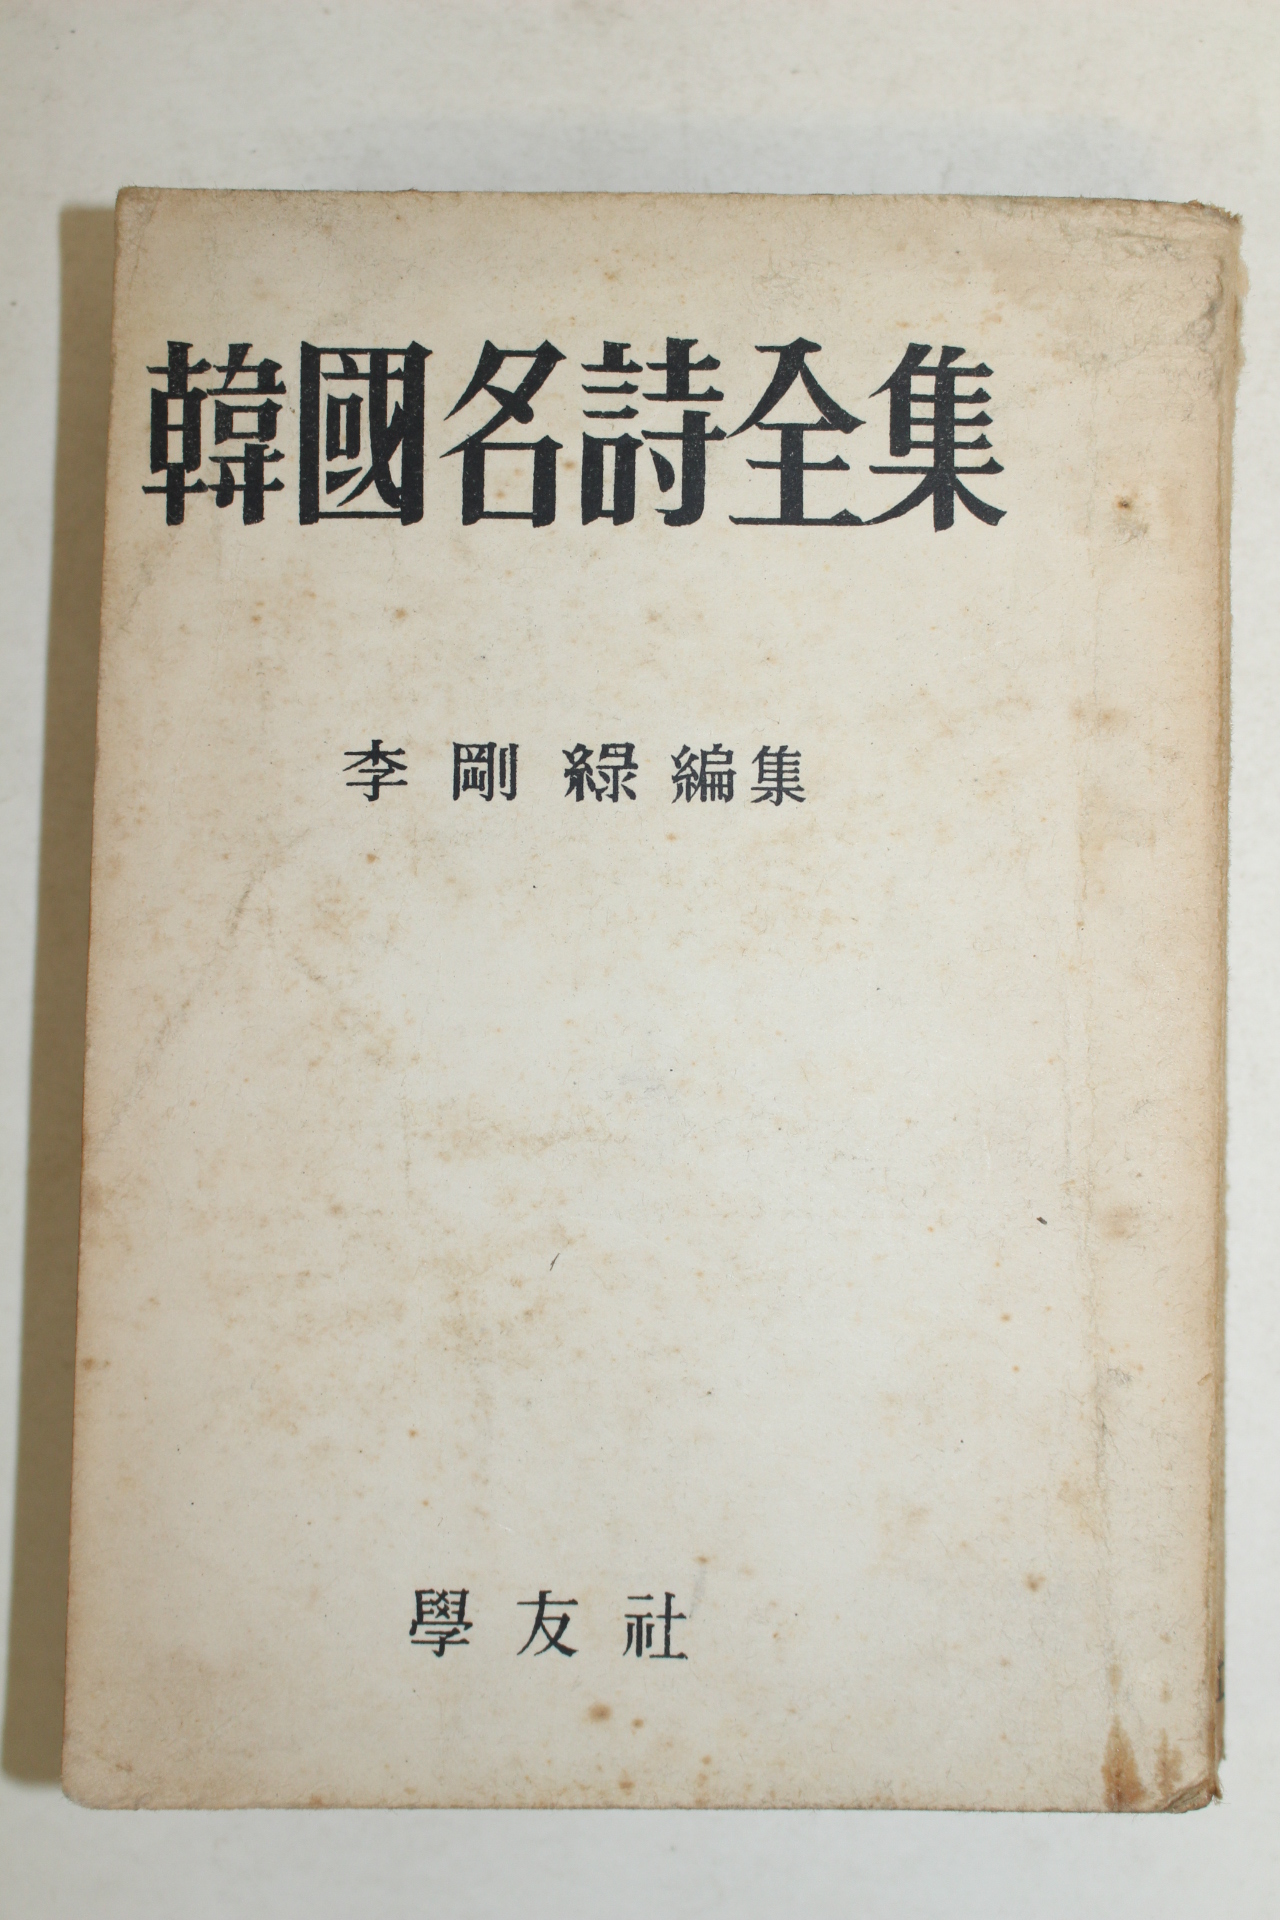 1960년 이강록(李剛綠)편집 한국명시전집